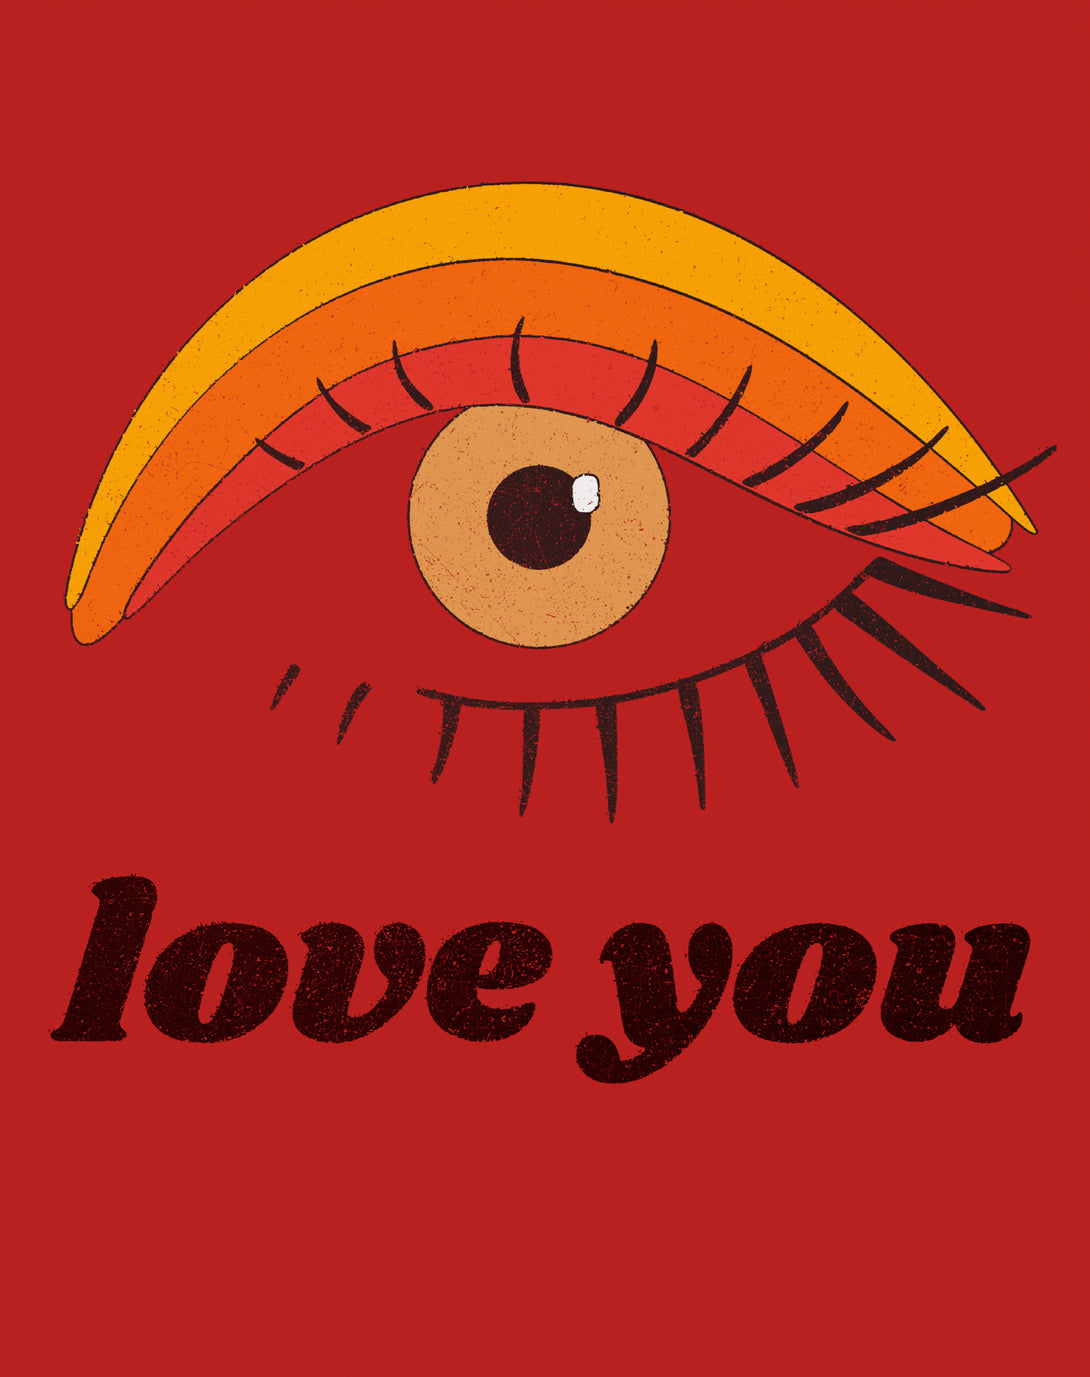 Vintage Valentine Eye Love You Women's T-shirt Red - Urban Species Design Close Up